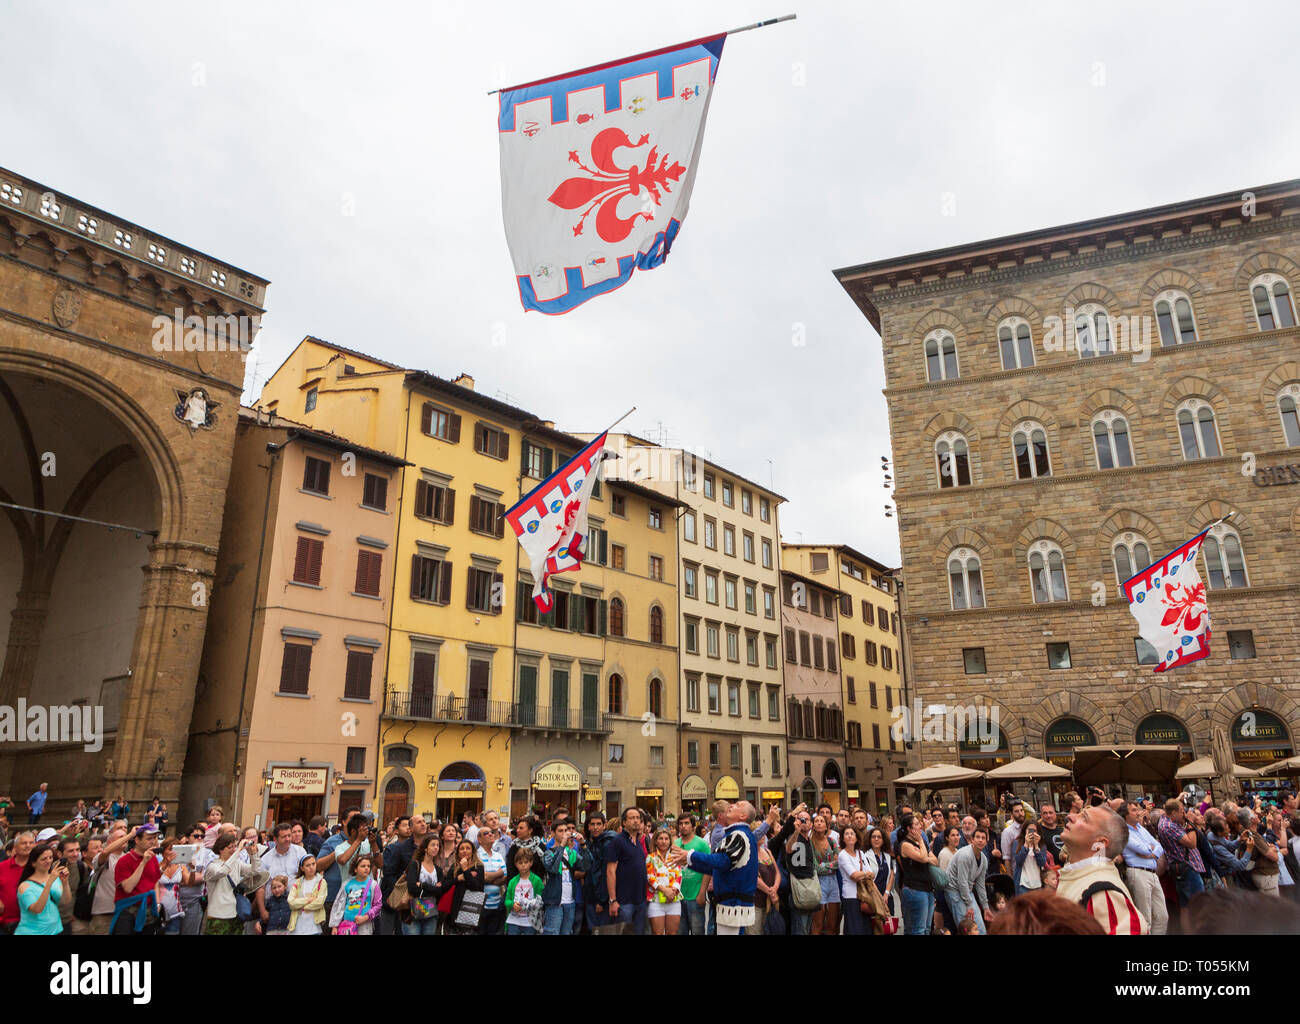 Un desfile de lanzadores bandera tradicional en marzo en la Piazza della Signoria, cerca del Palazzo Vecchio, del ayuntamiento de Florencia, Toscana, Italia. Foto de stock